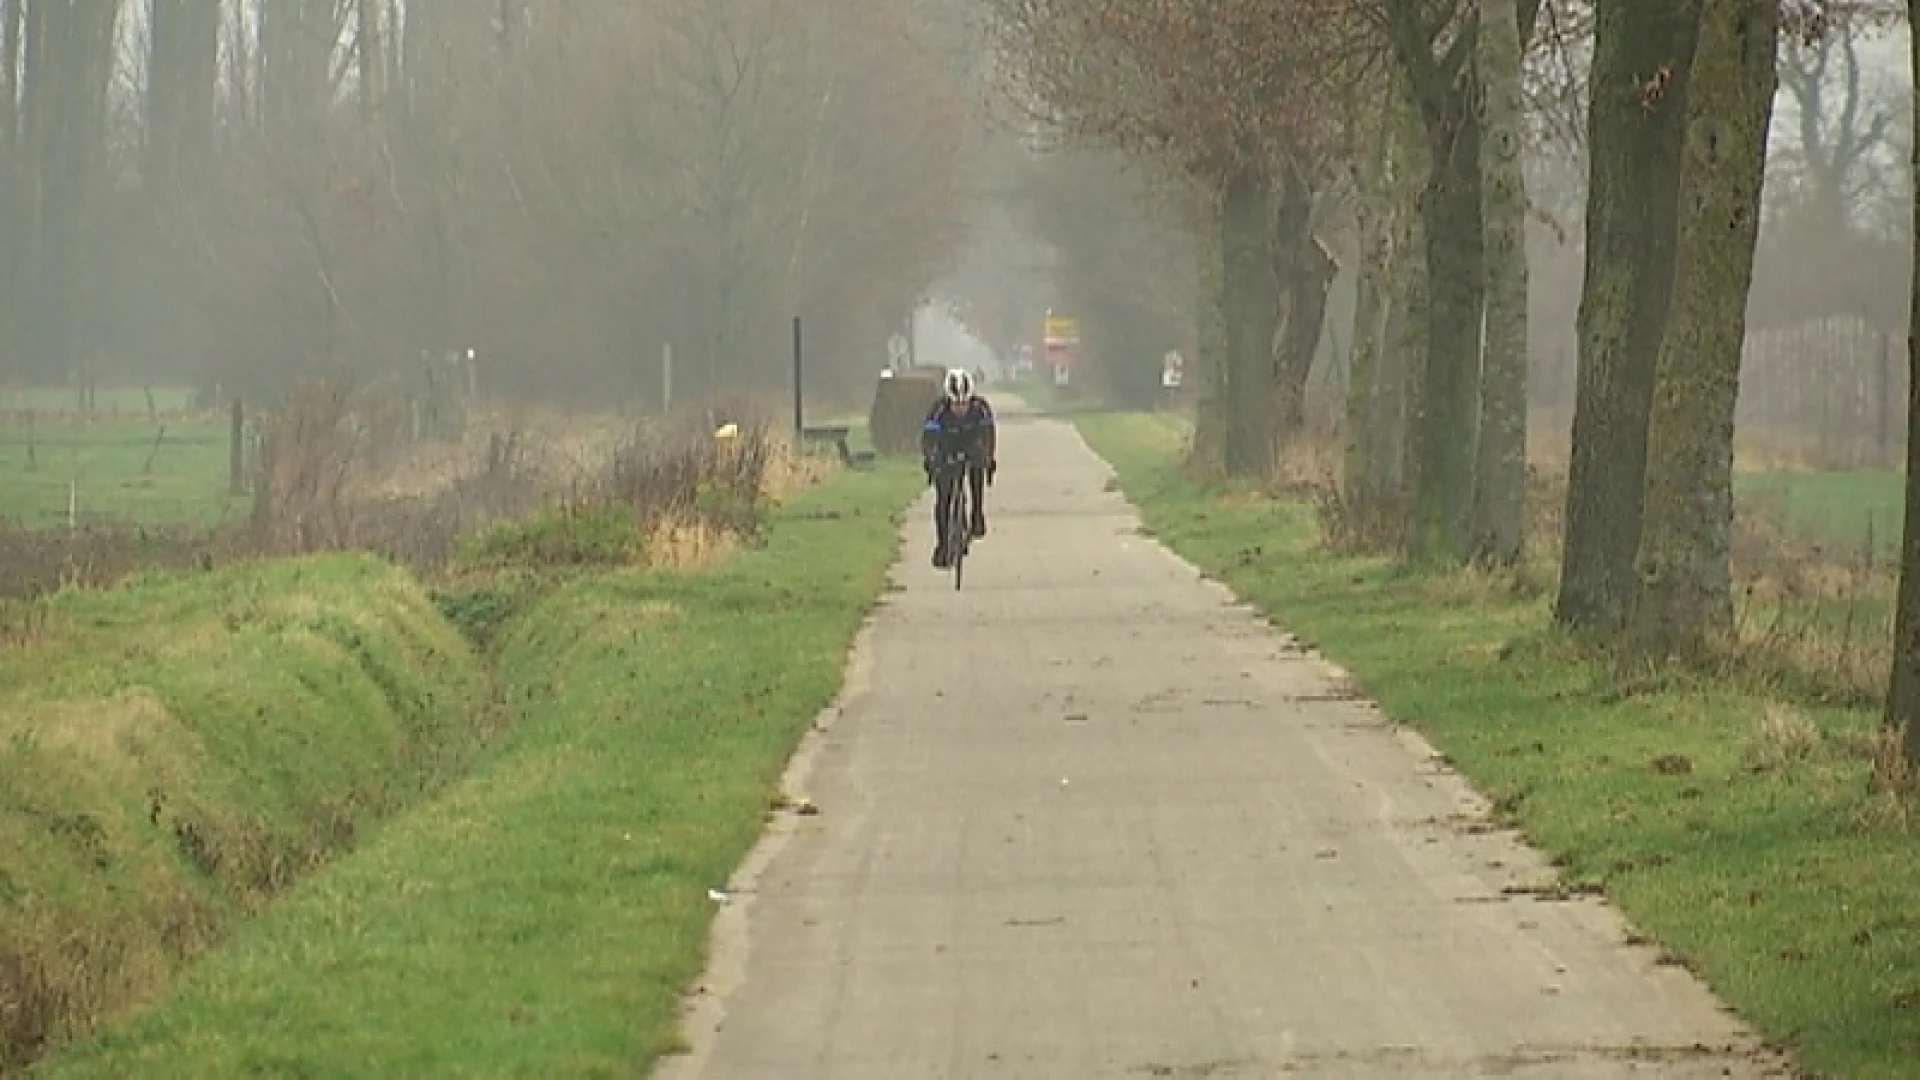 Geetbets wil fietssnelweg maar Natuurpunt verzet zich: "Onbegrijpelijk!"